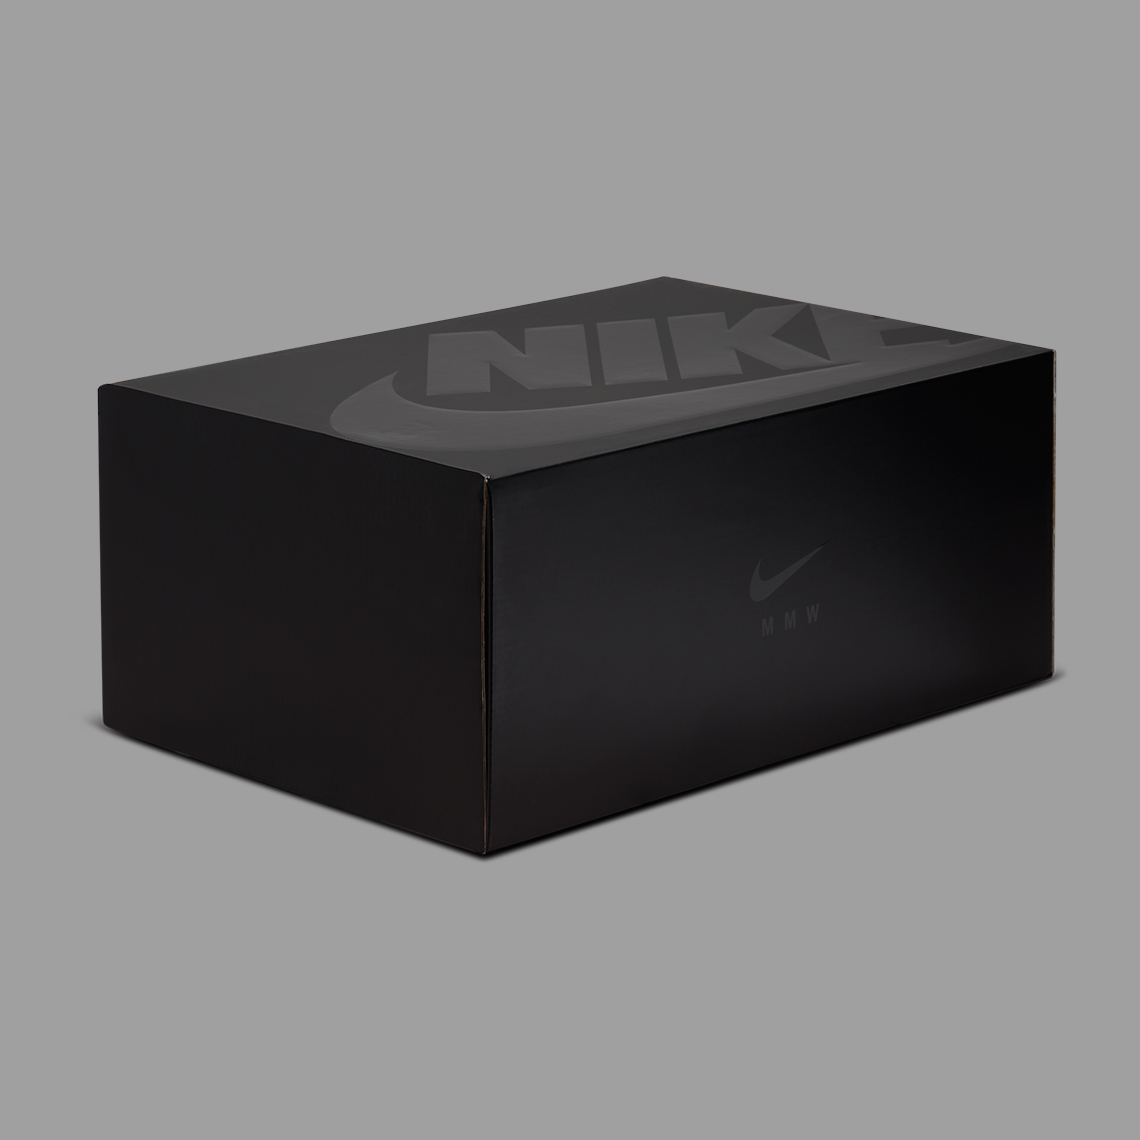 Nike Mmw 005 Slide Box